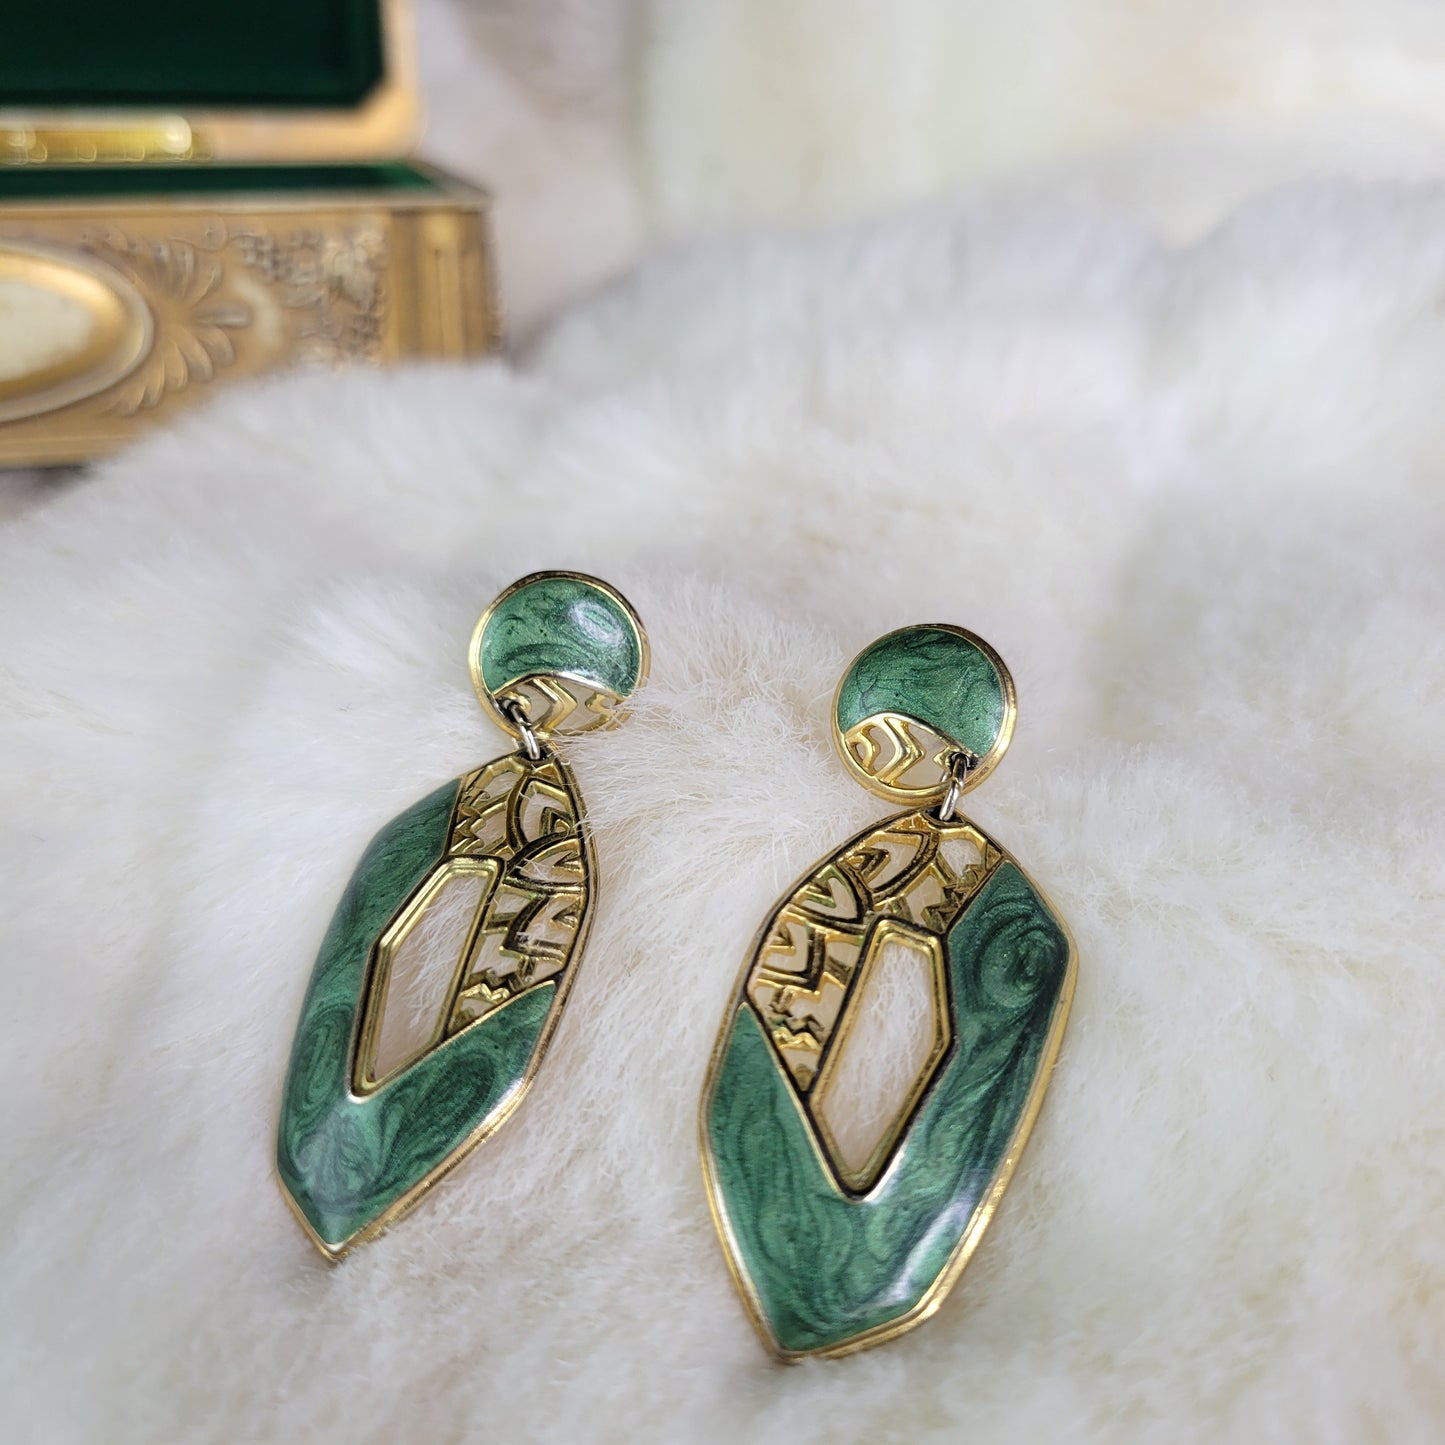 Gold with Green Swirl Enamel Vintage Drop Earrings - Pierced